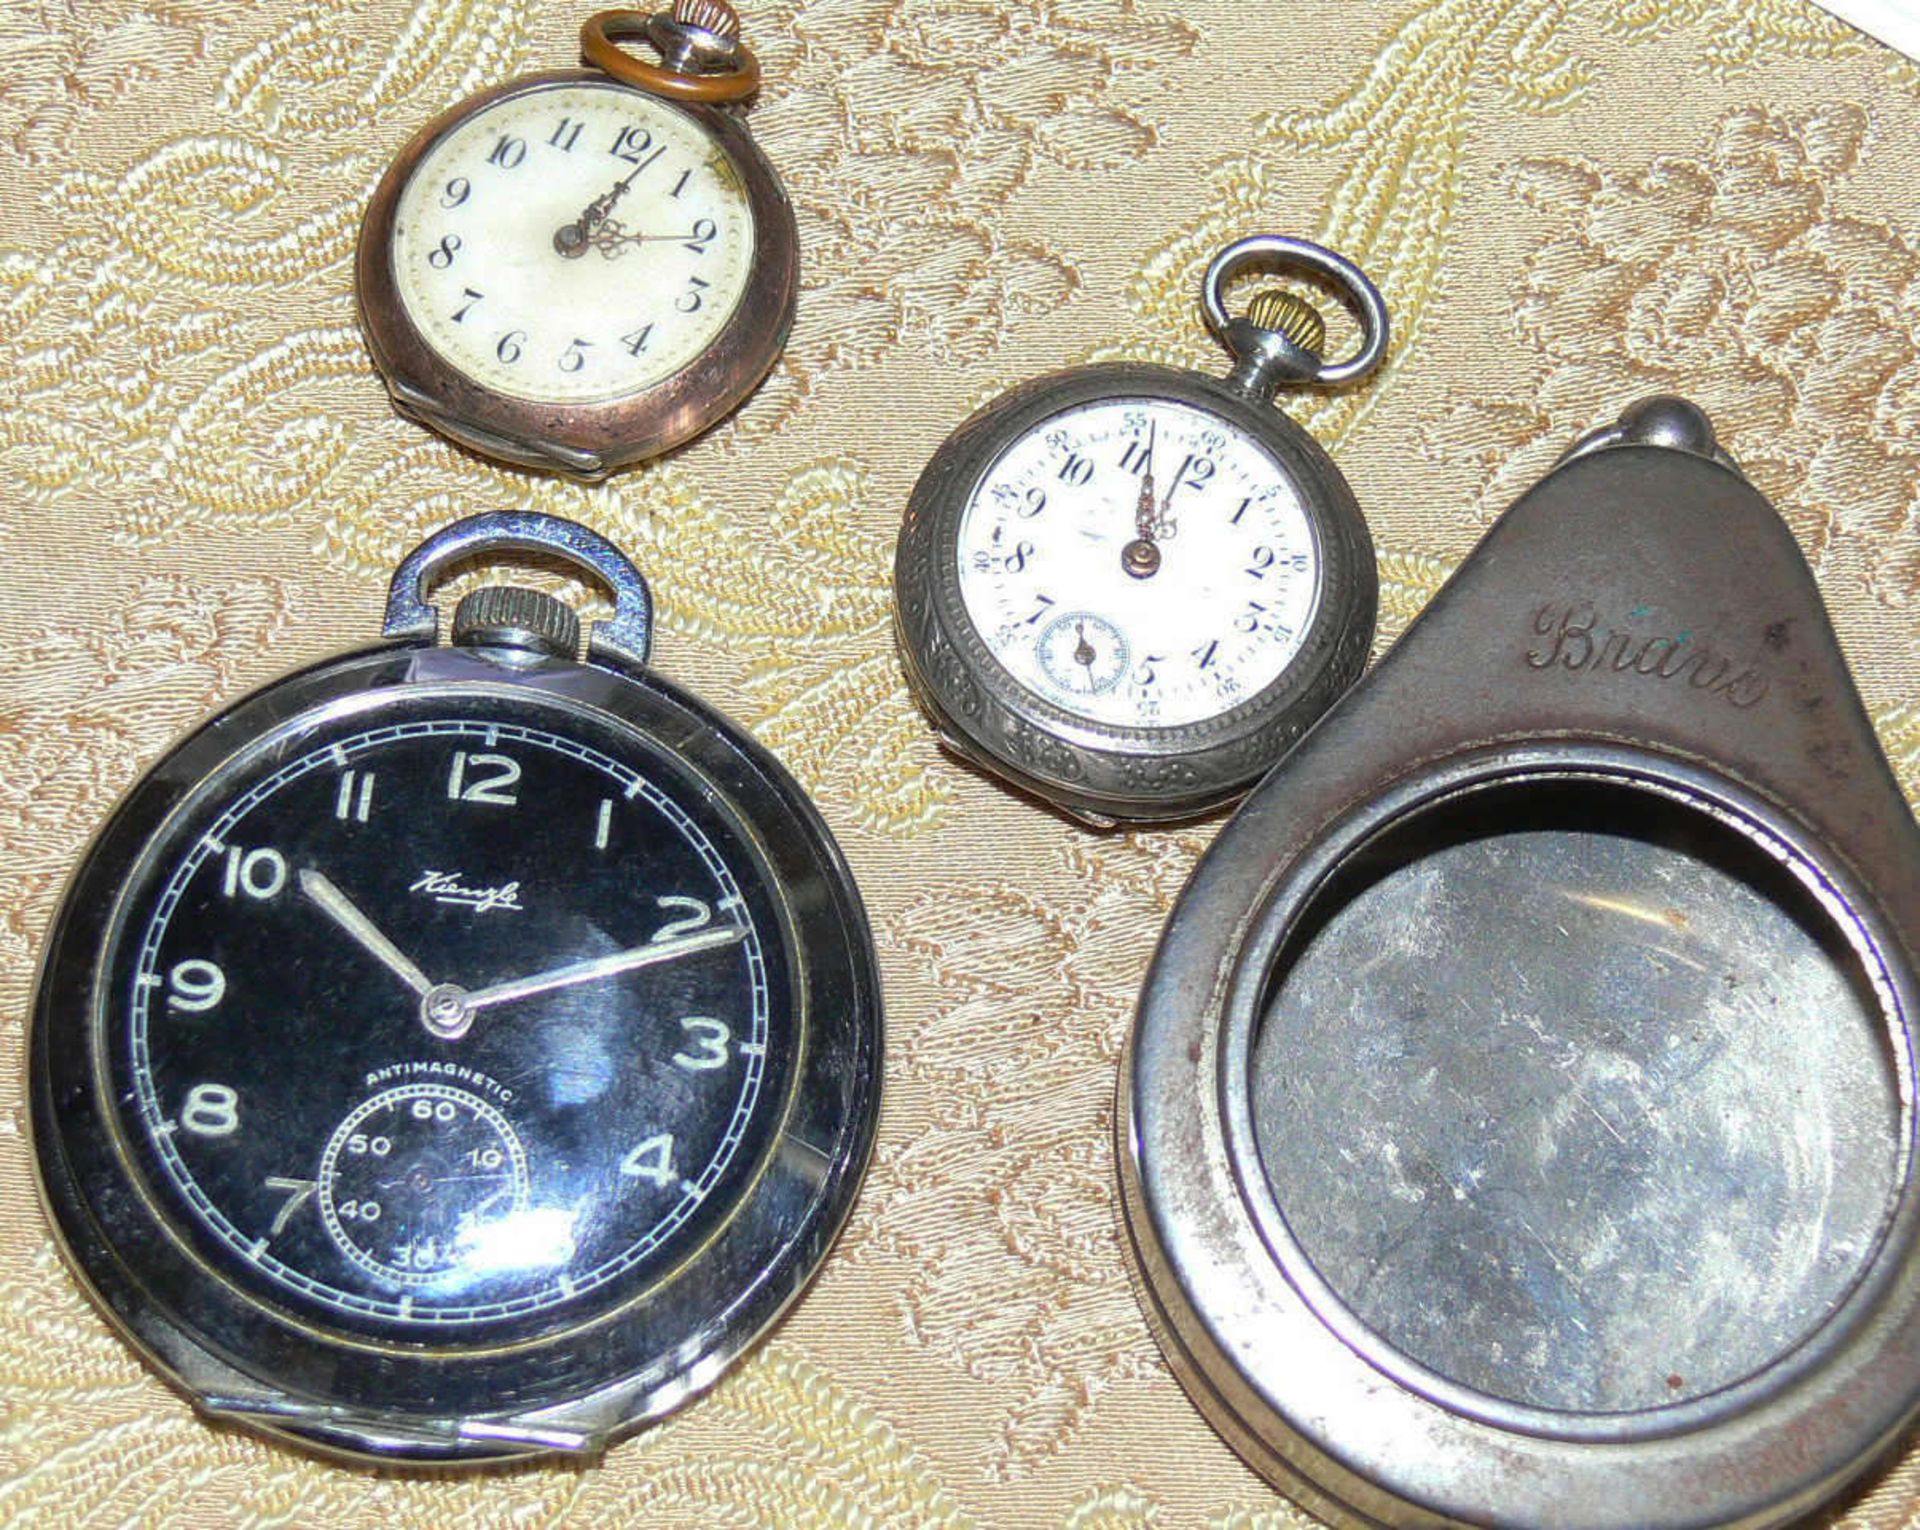 kleines Lot Taschenuhren, insgesamt 3 Stück. 1 kleine Uhr läuft an, bleibt aber stehen, sonst ok.